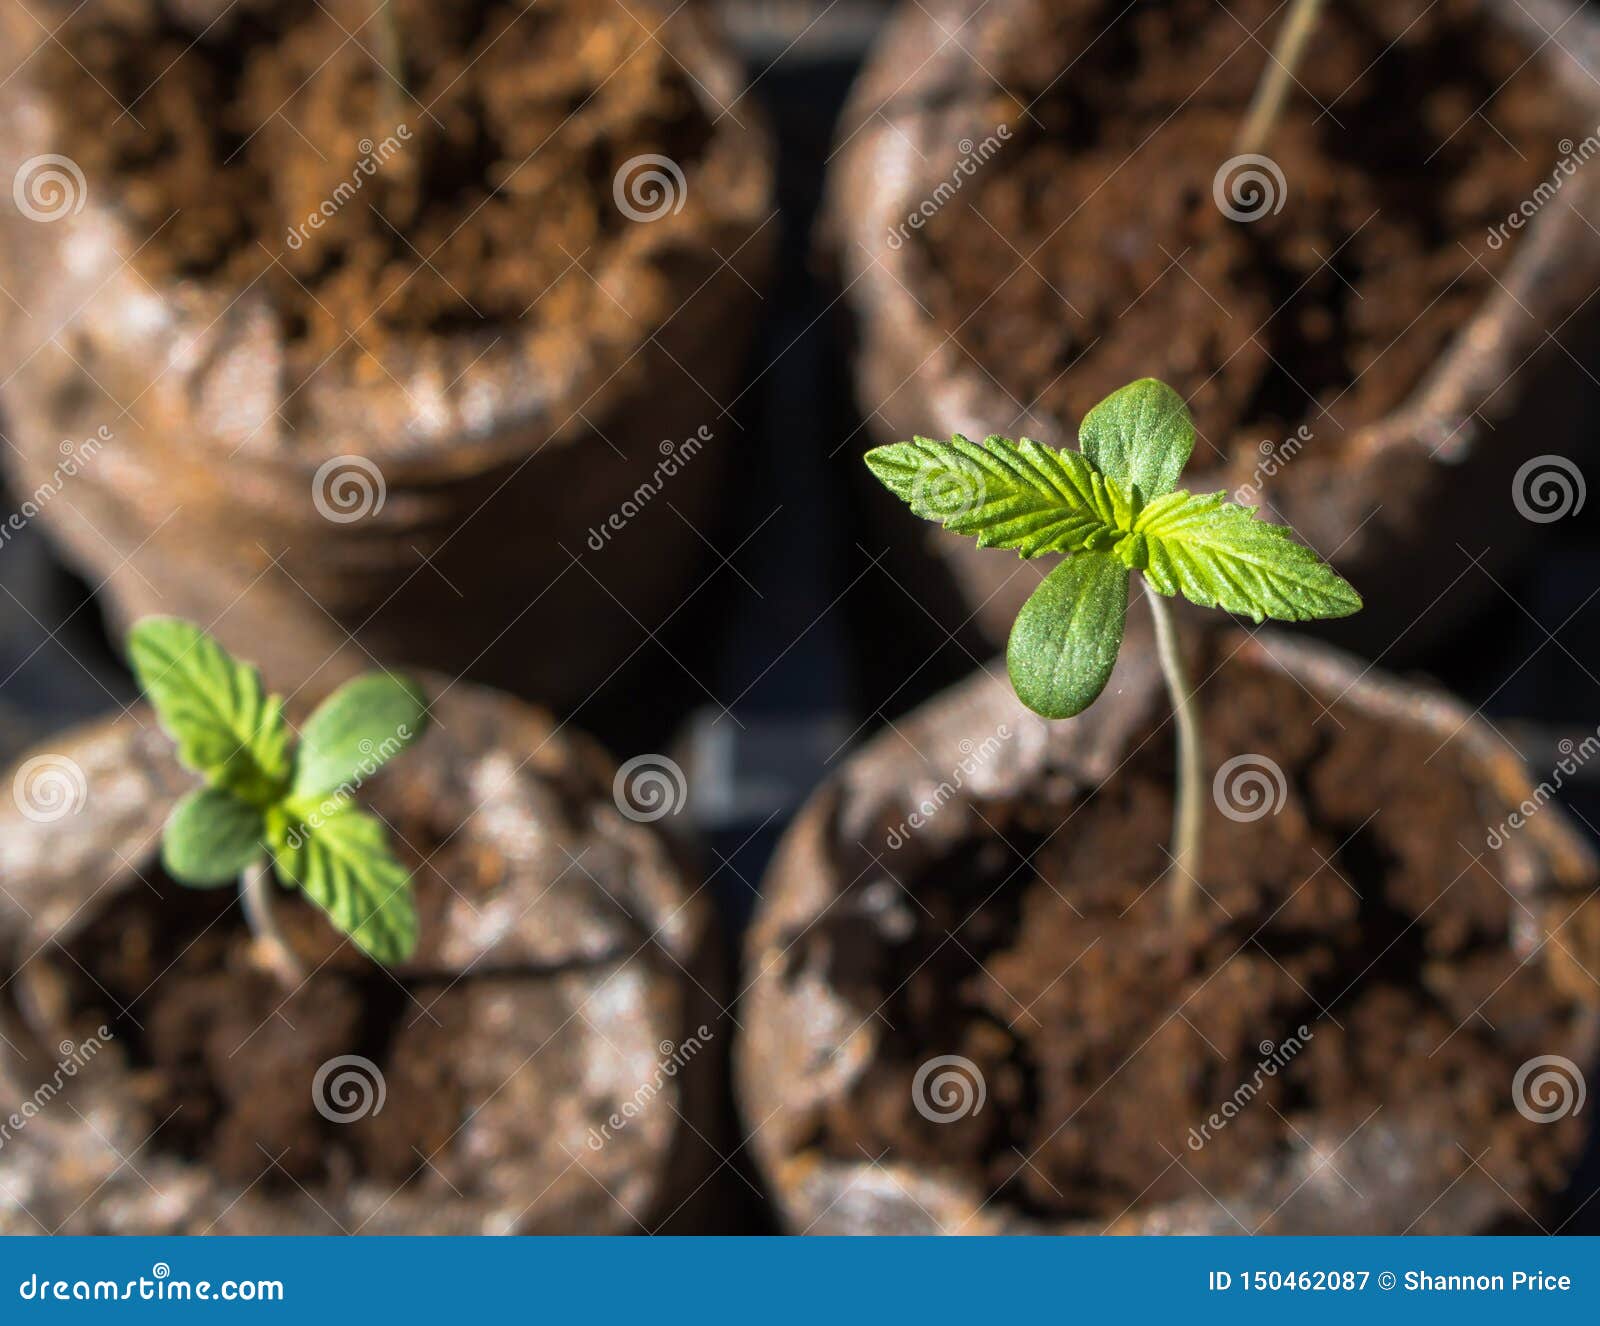 Фото саженцев конопли сколько по времени растет куст марихуаны